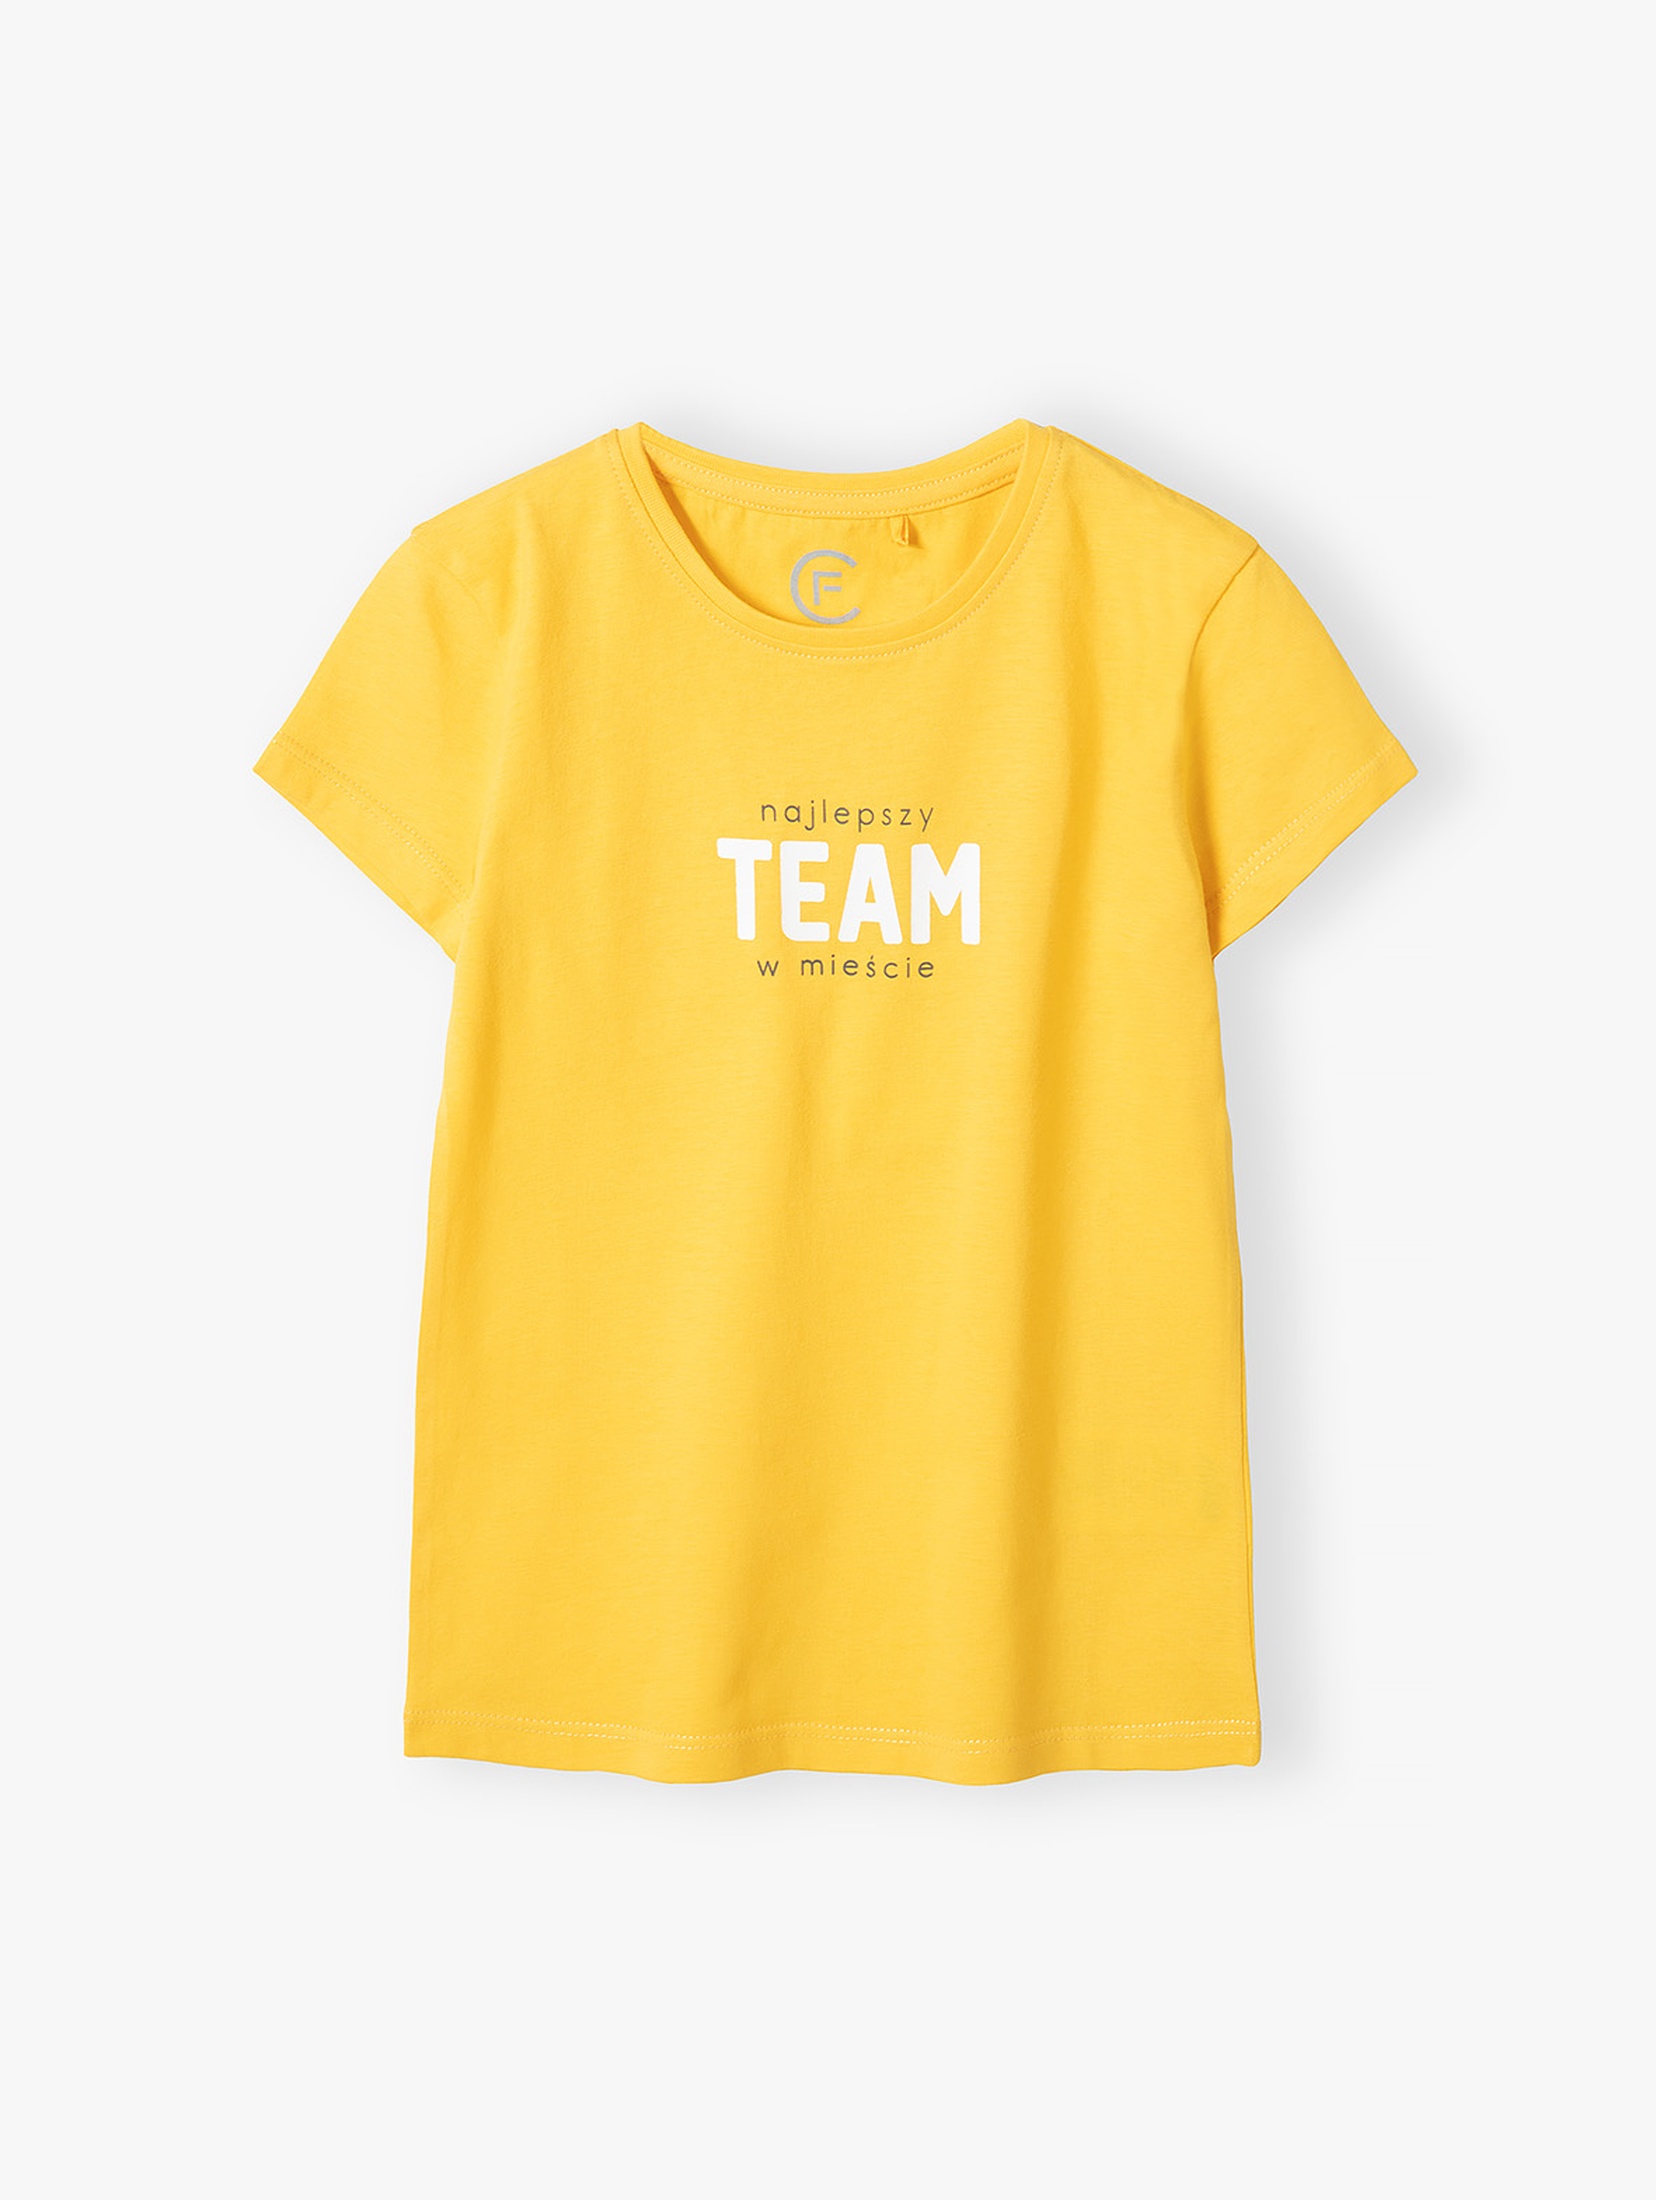 T-shirt bawełniany żółty z napisem Najlepszy team w mieście